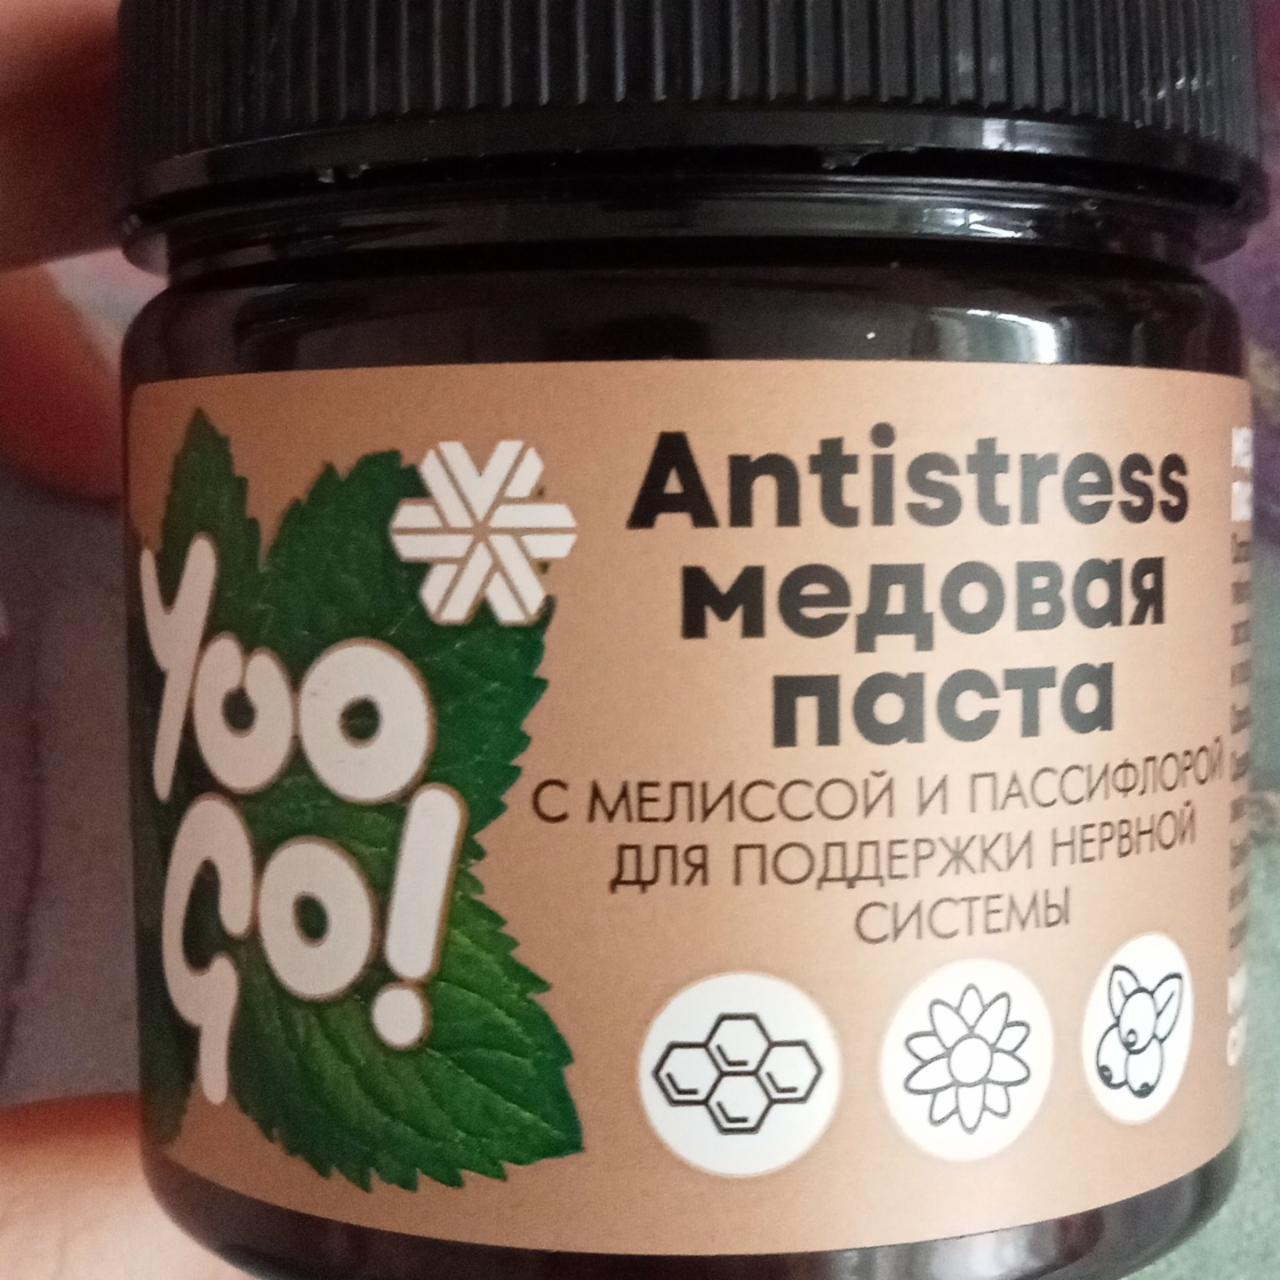 Фото - Antistress Медовая паста с мелиссой и пассифлорой для поддержки нервной системы Yoo go